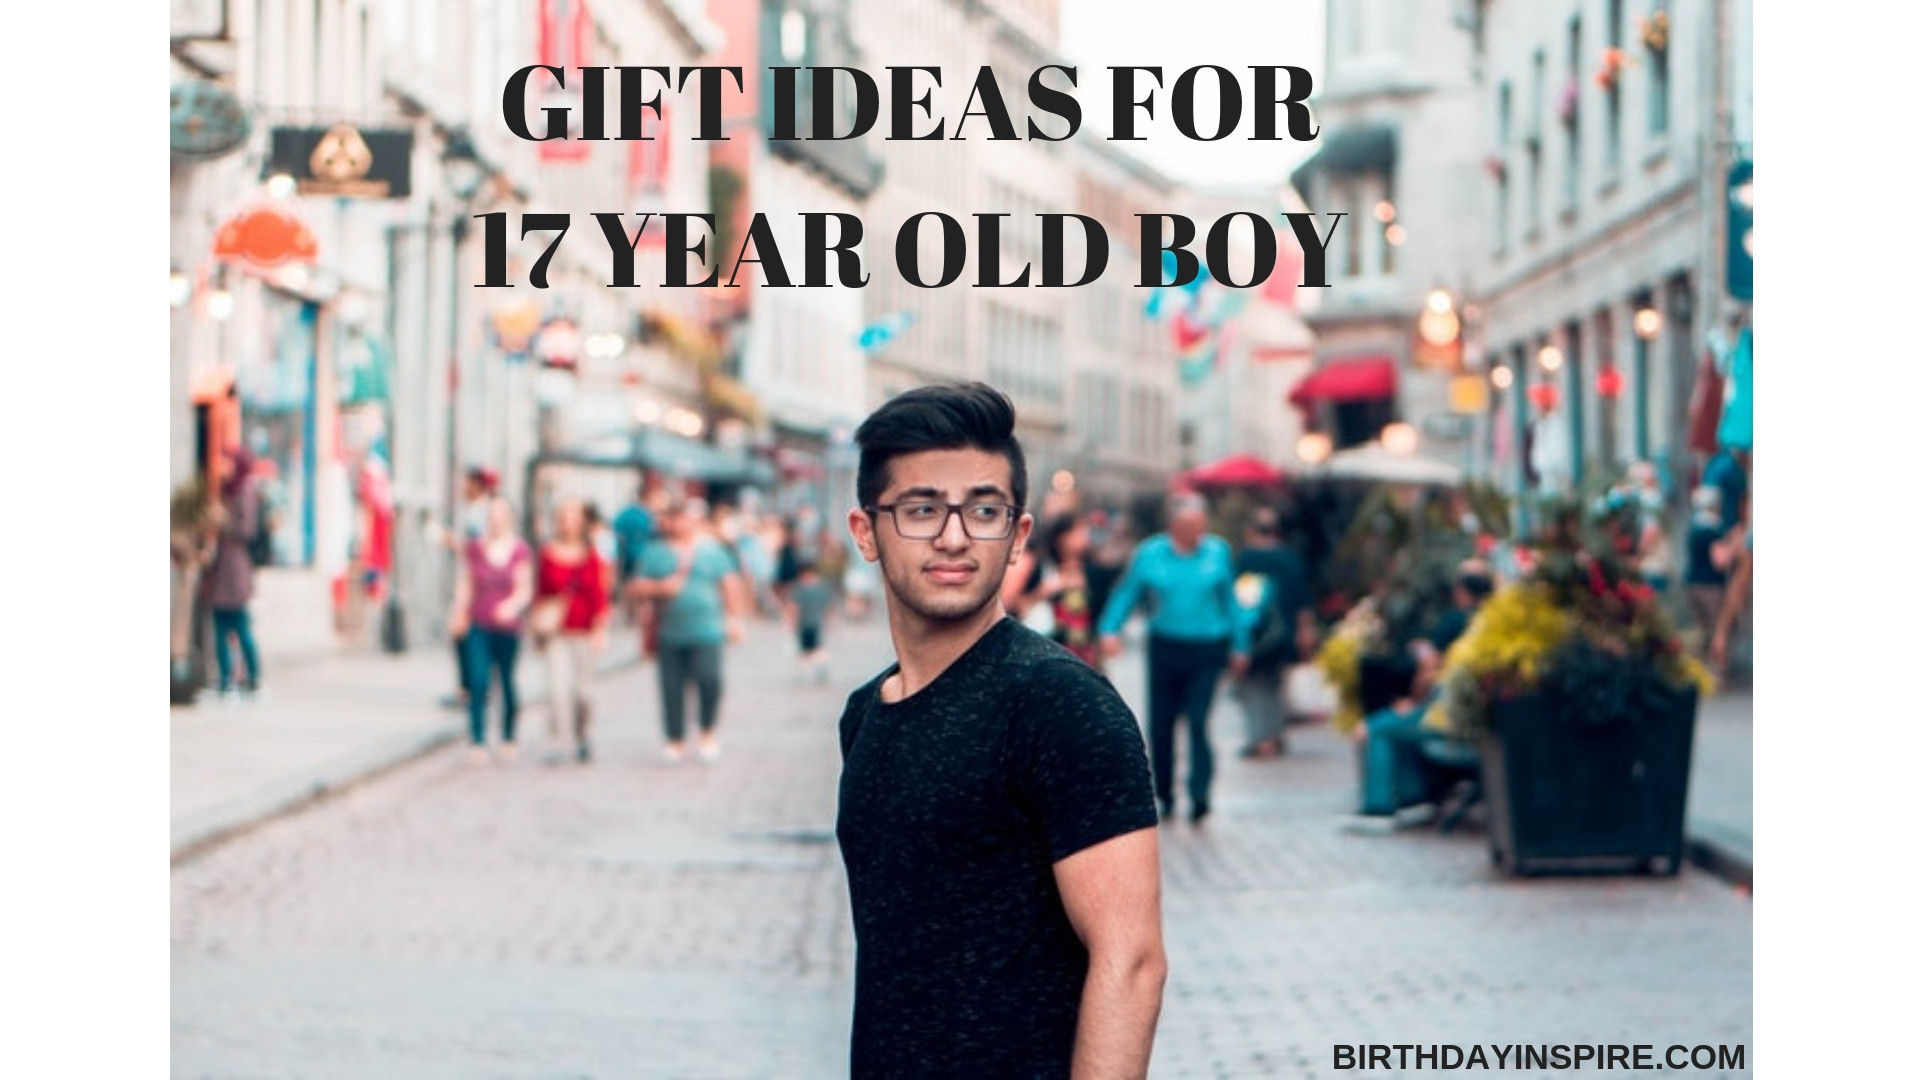 17 Year Old Boy Birthday Gift Ideas
 33 Wonderful Gift Ideas For 17 Year Old Boy